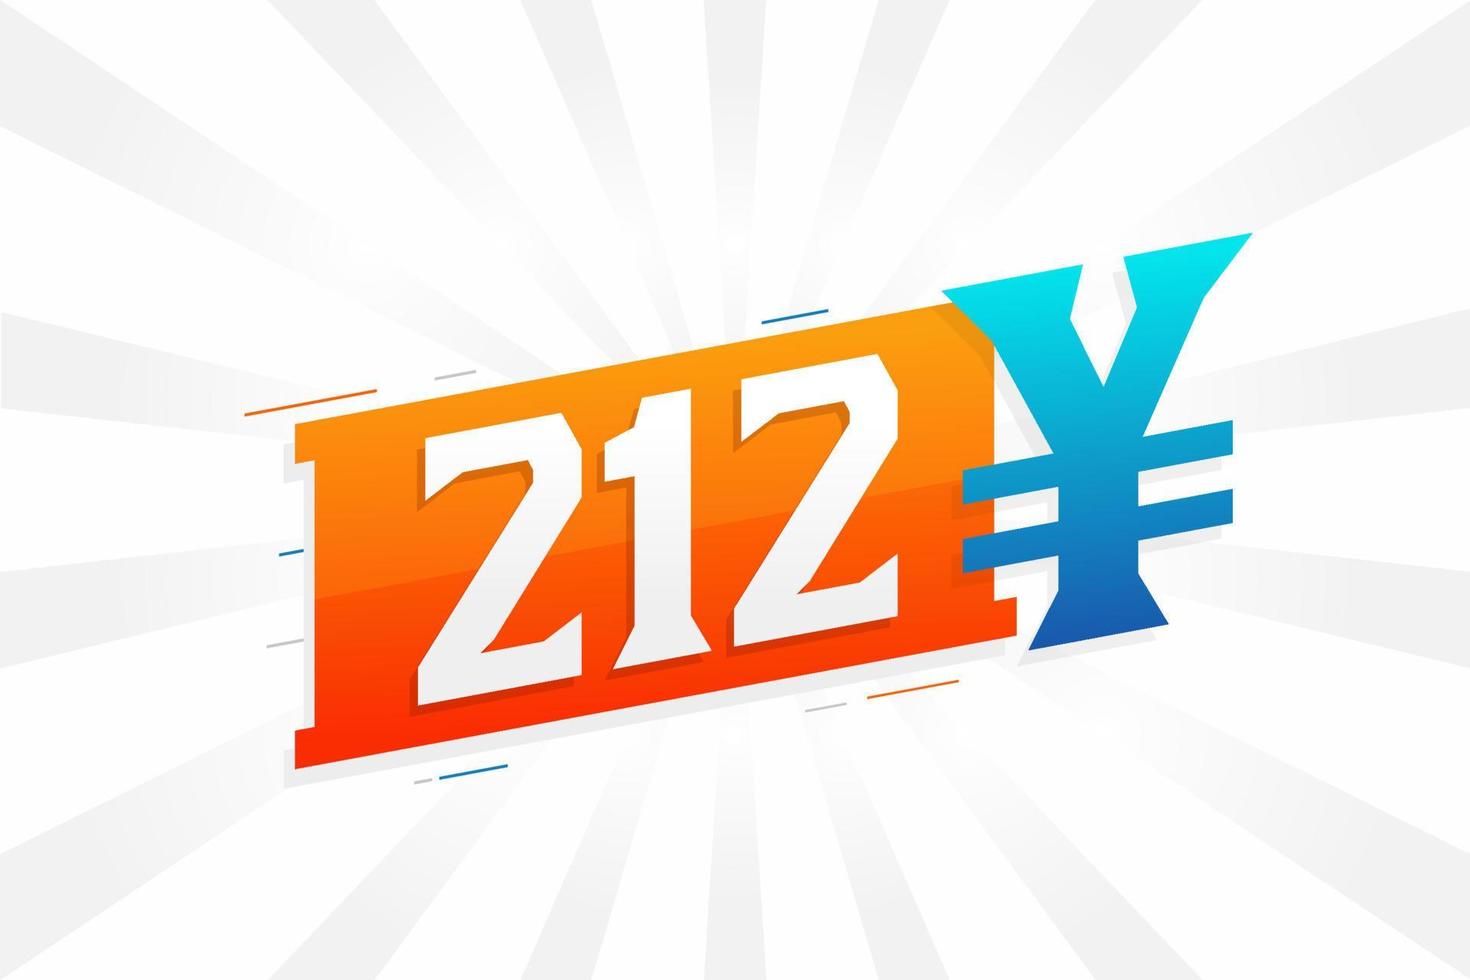 212 yuan symbole de texte vectoriel de devise chinoise. 212 yens monnaie japonaise vecteur de stock d'argent